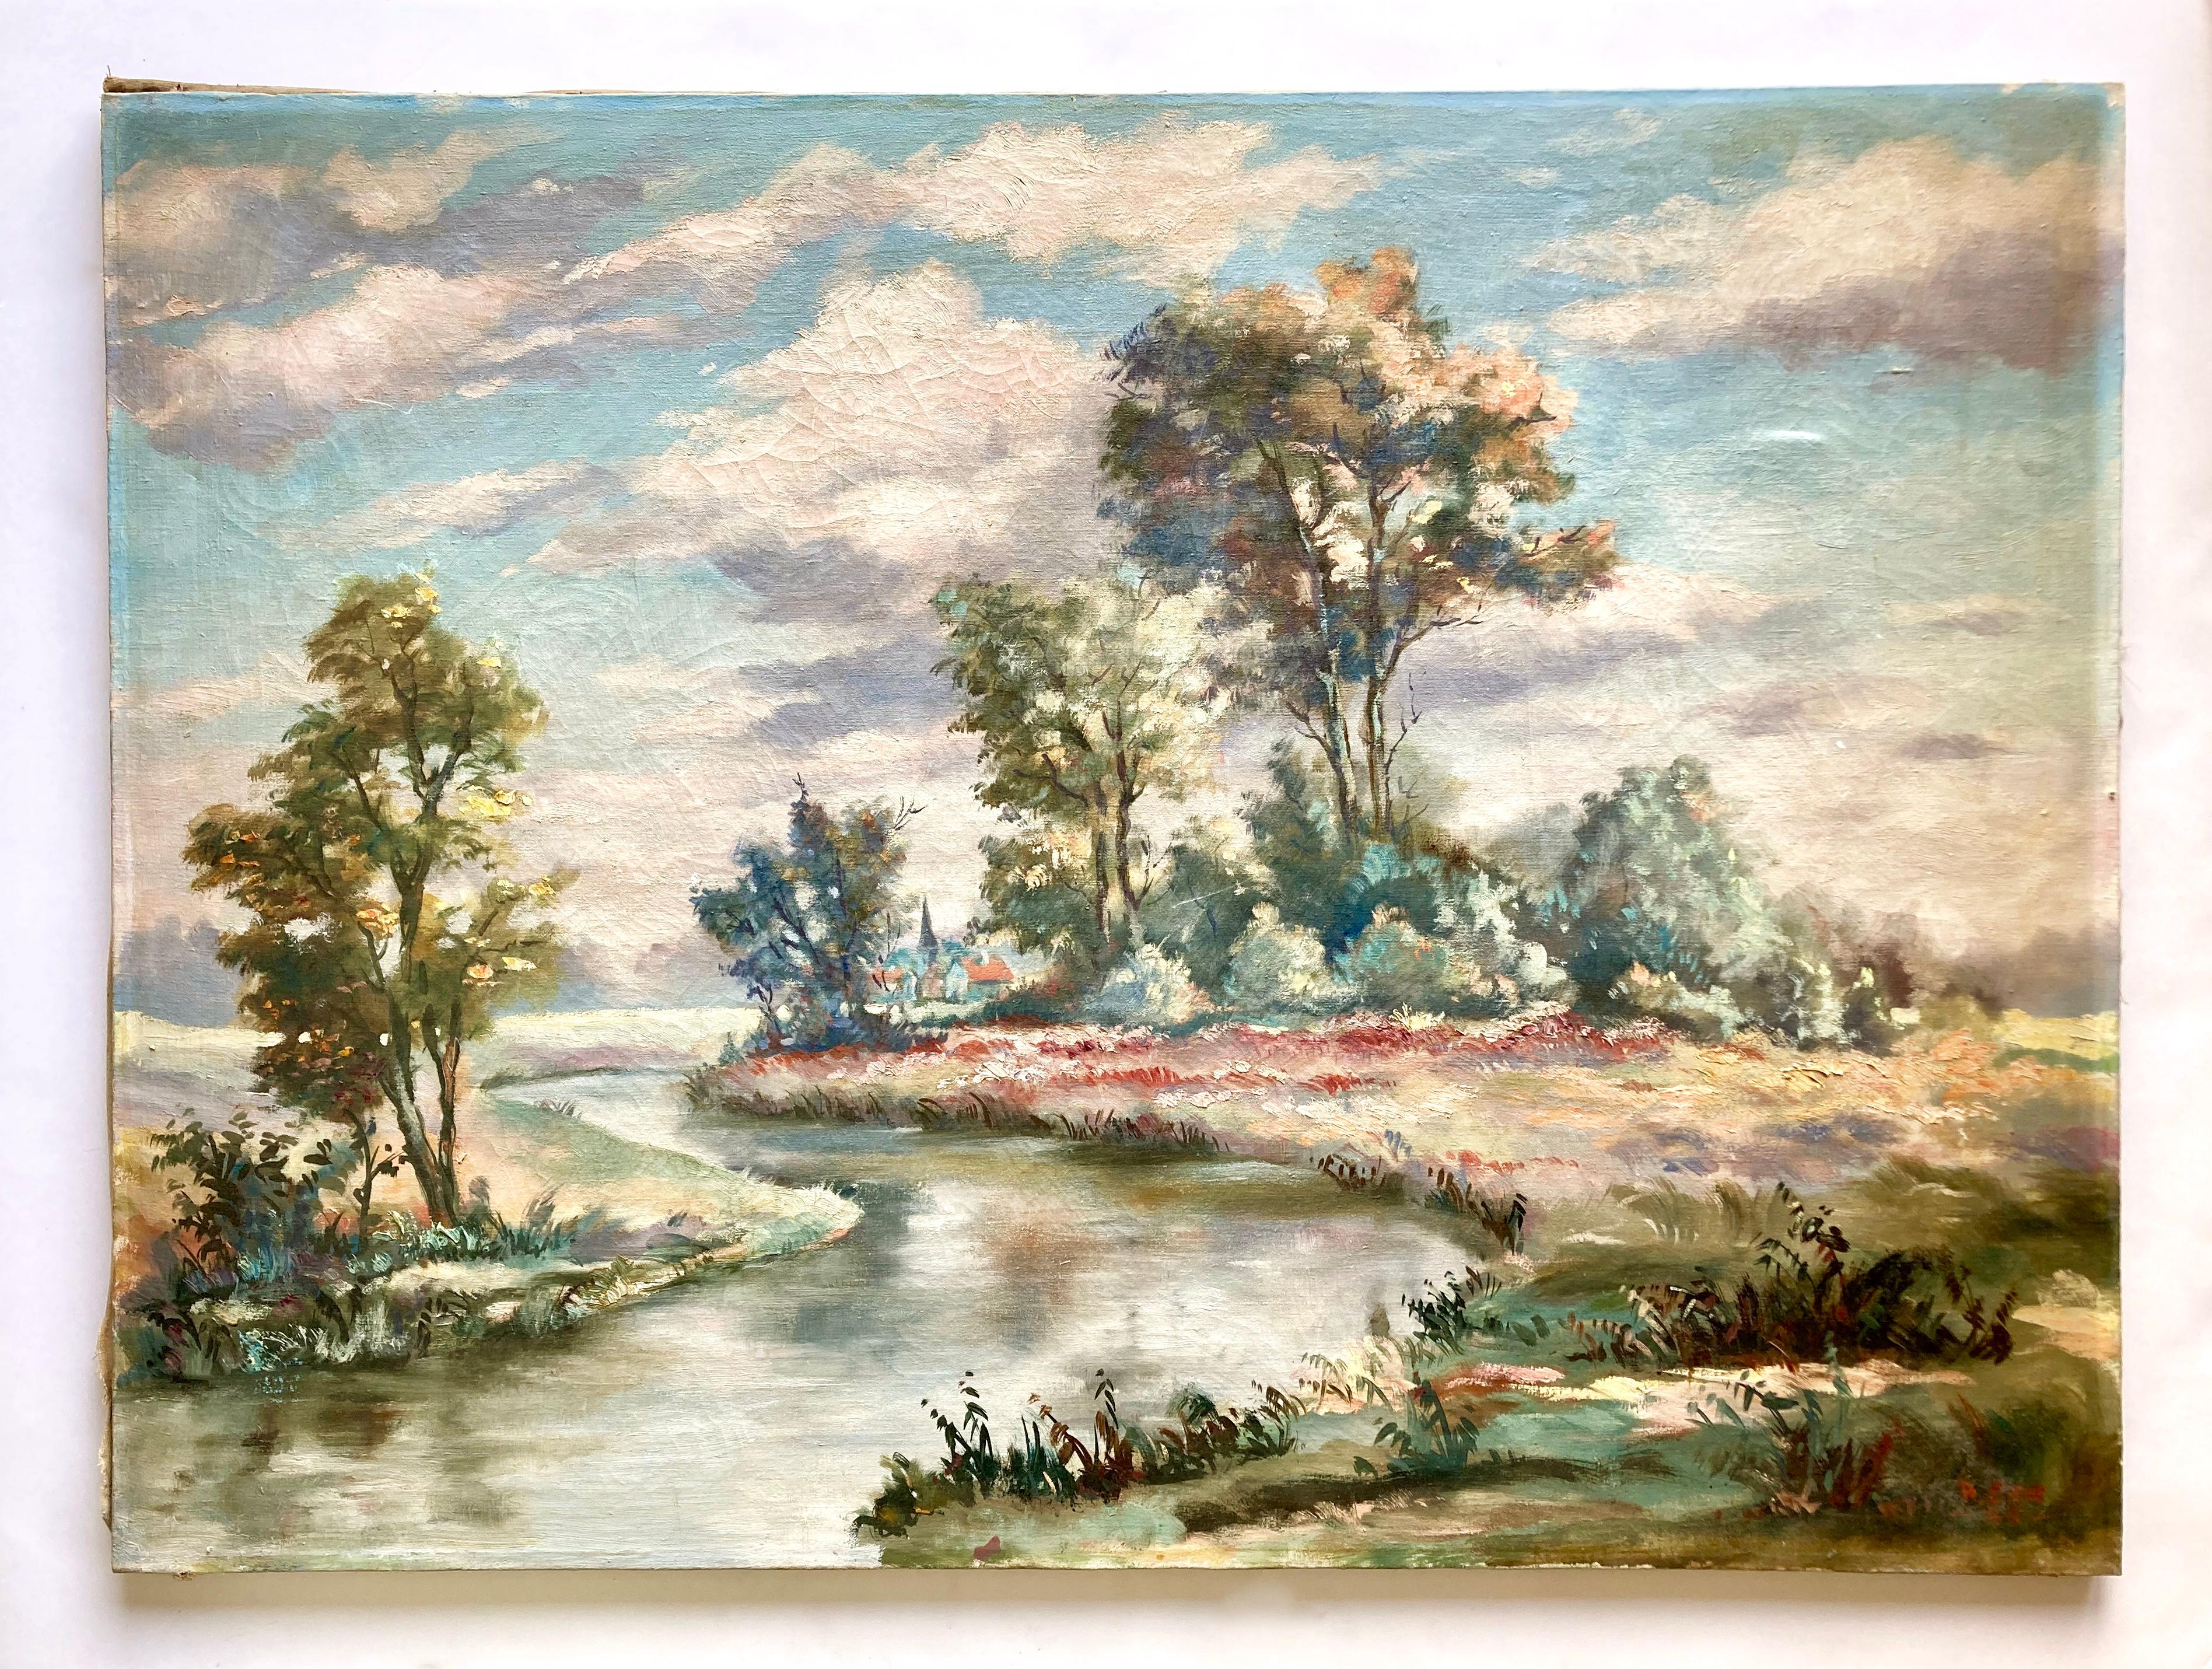 Eine große, romantische Landschaft in sanften Pastellfarben. Dieses Original-Ölgemälde auf Leinwand ist signiert und datiert 1955 von dem französischen Künstler A. Erb (1911-2005), siehe rechte untere Ecke. 

Alfred Erb wurde am 6. April 1911 in